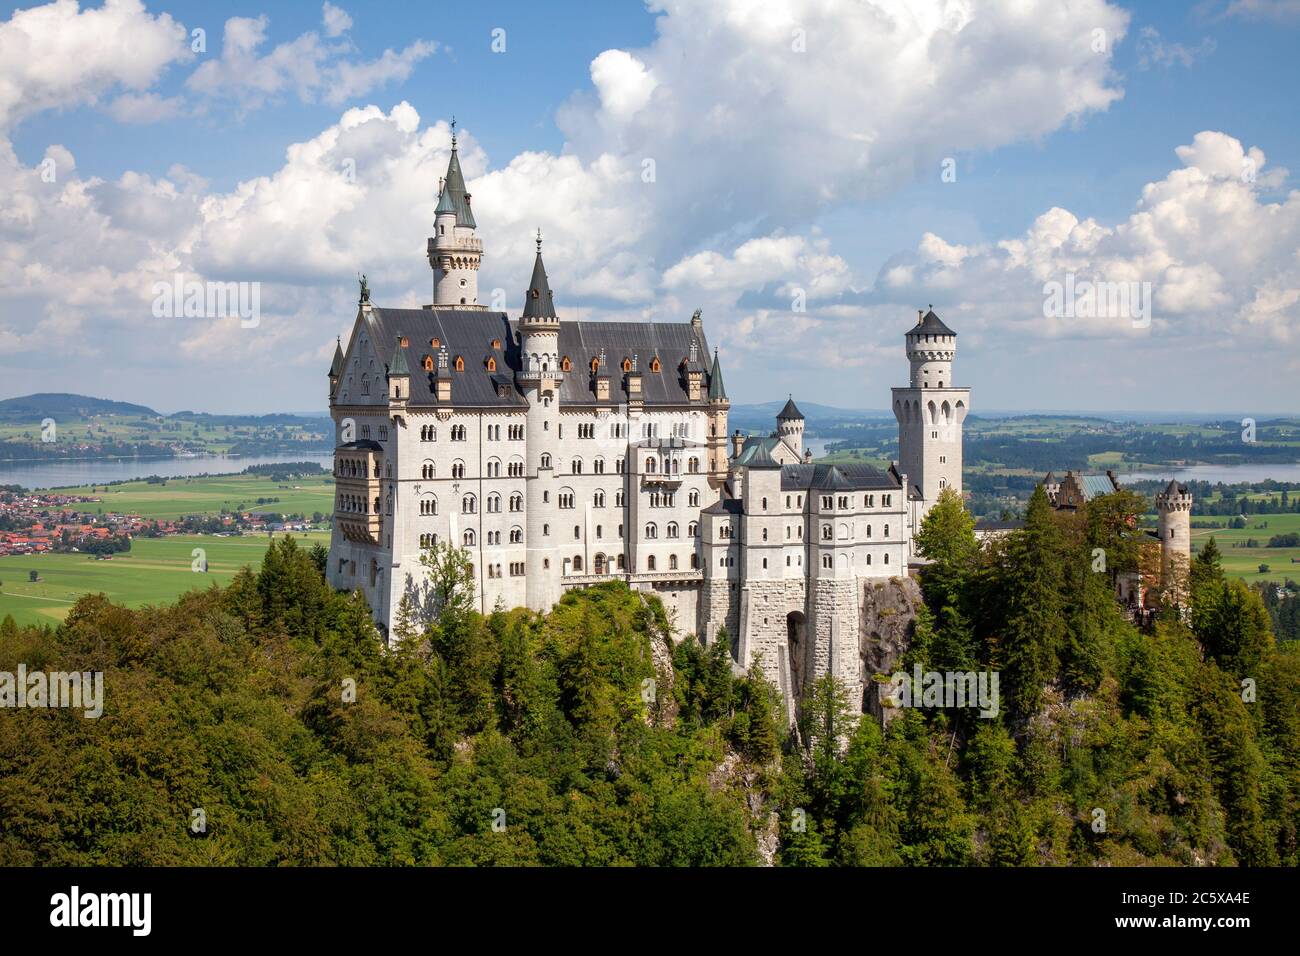 Le château de Neuschwanstein est un palais roman du XIXe siècle situé sur une colline escarpée au-dessus du village de Hohenschwangau, près de Füssen, dans le sud-ouest de Bavari Banque D'Images